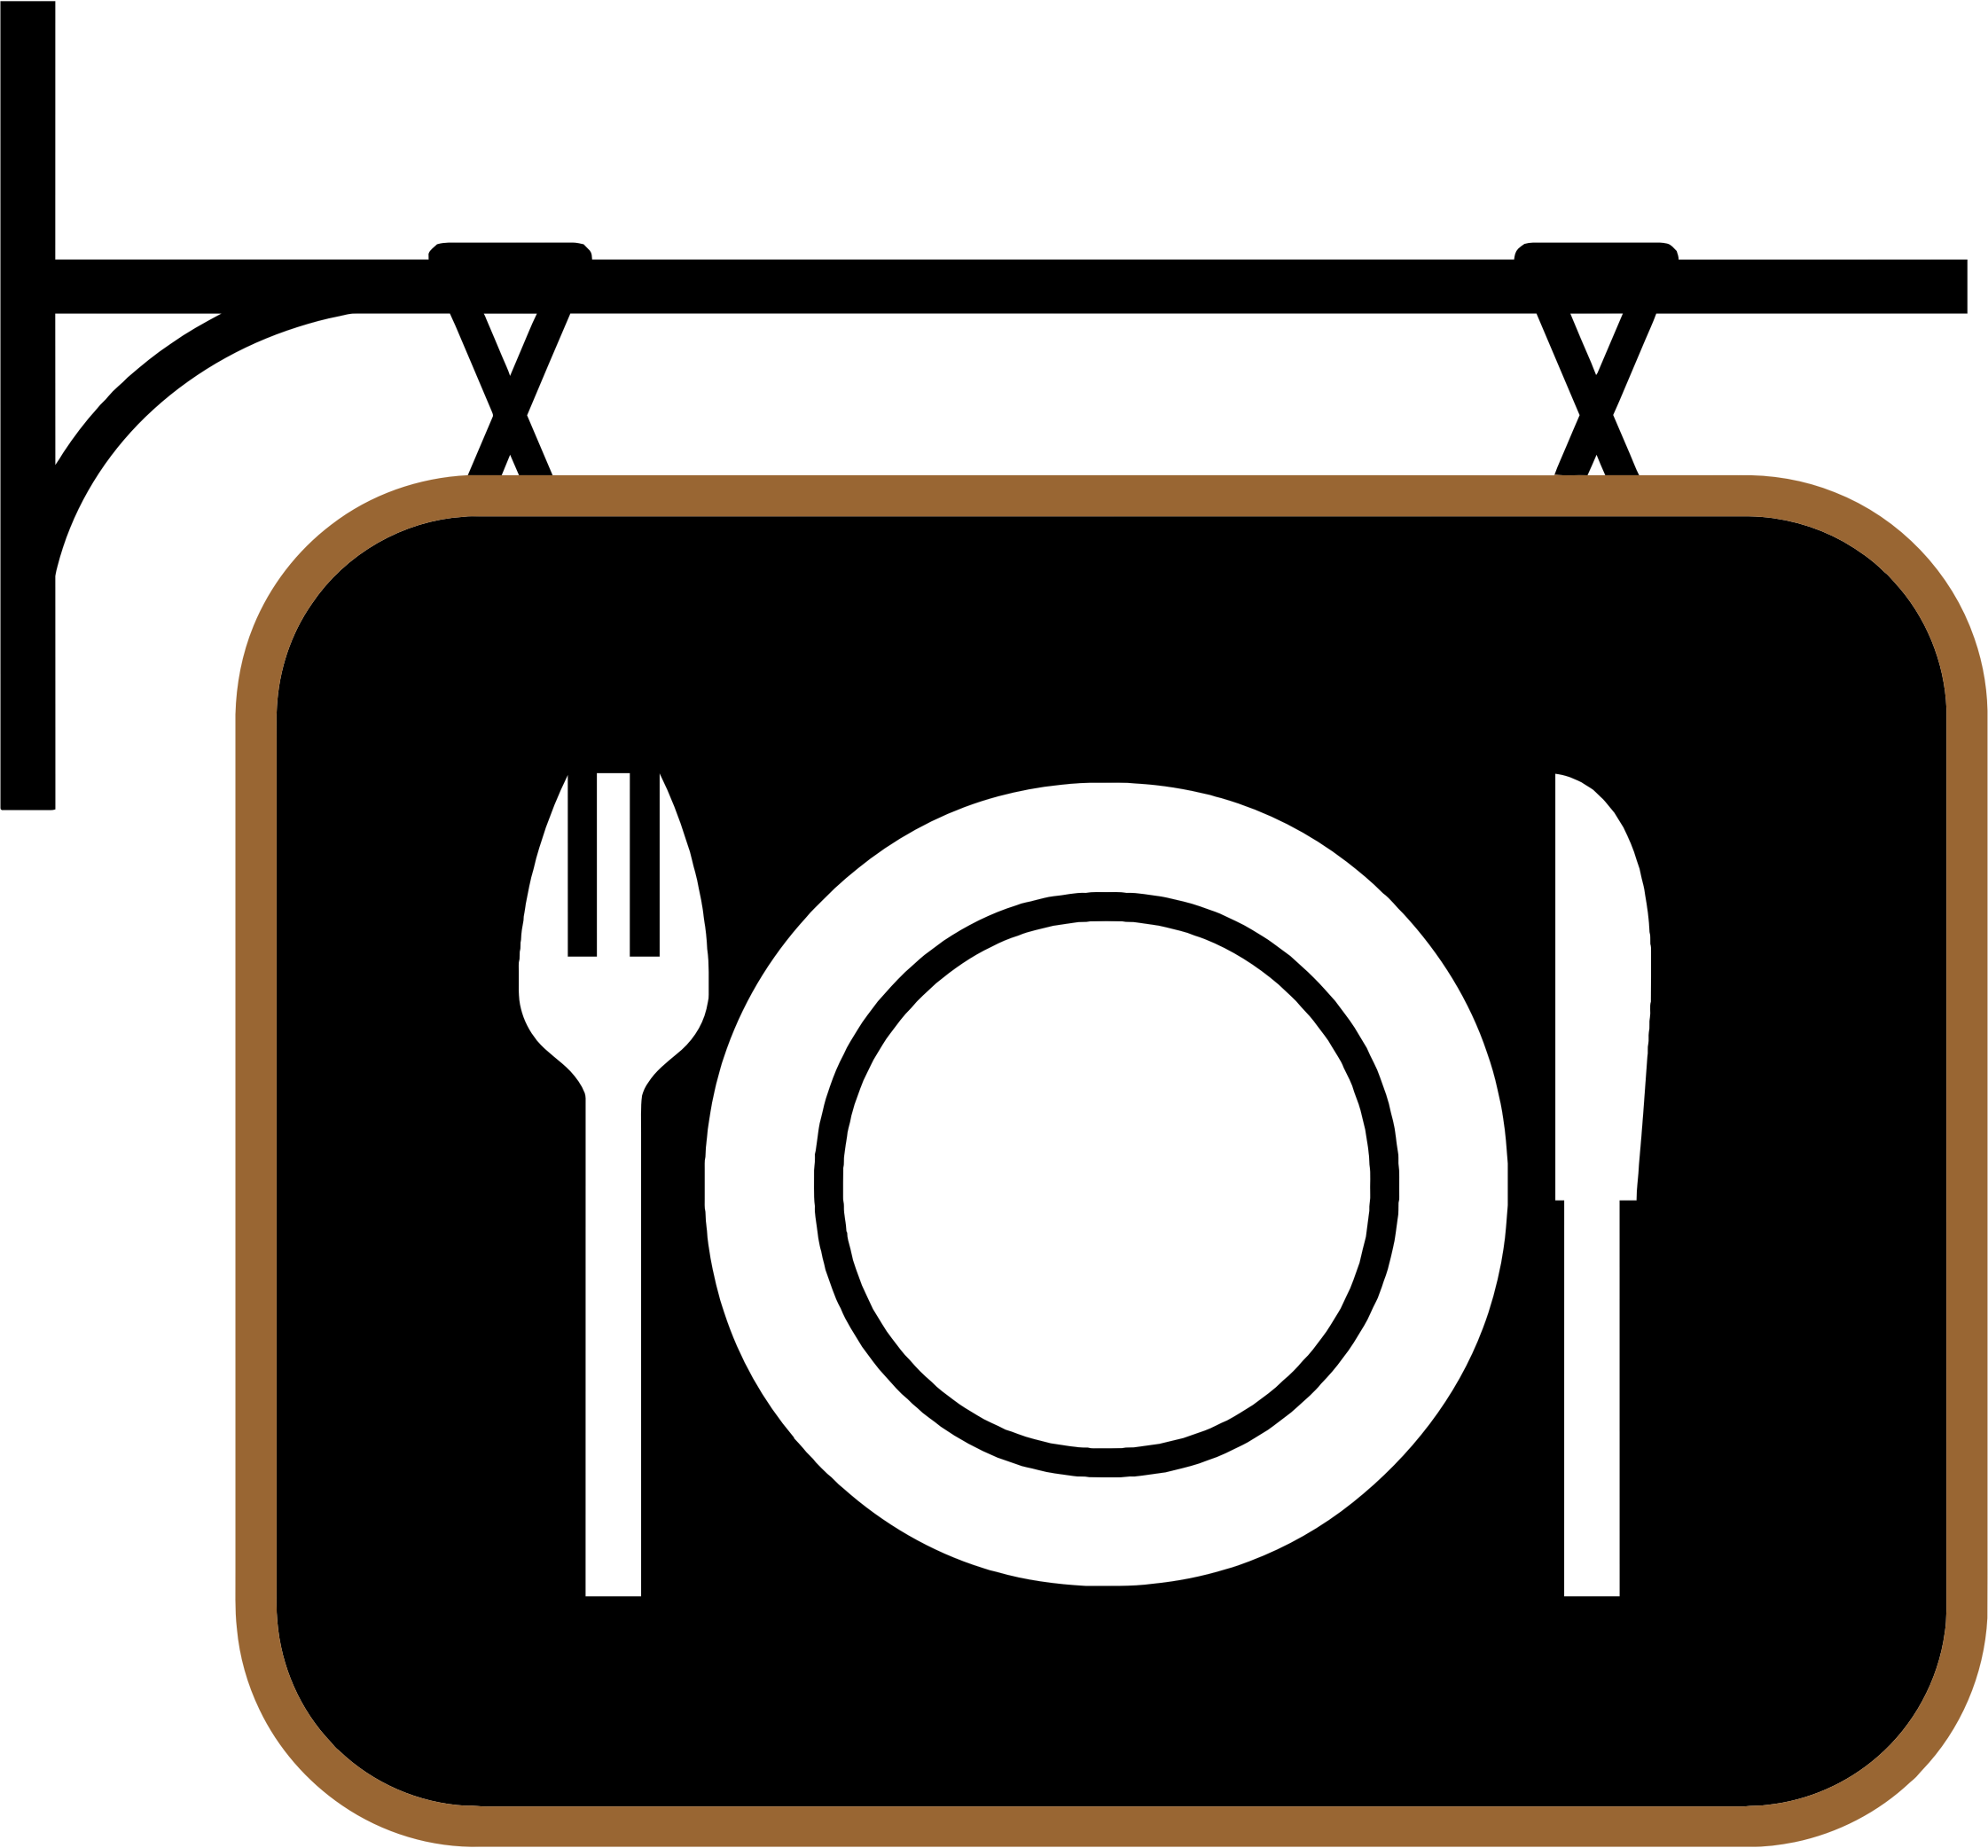 Restaurant Logo PNG Image File